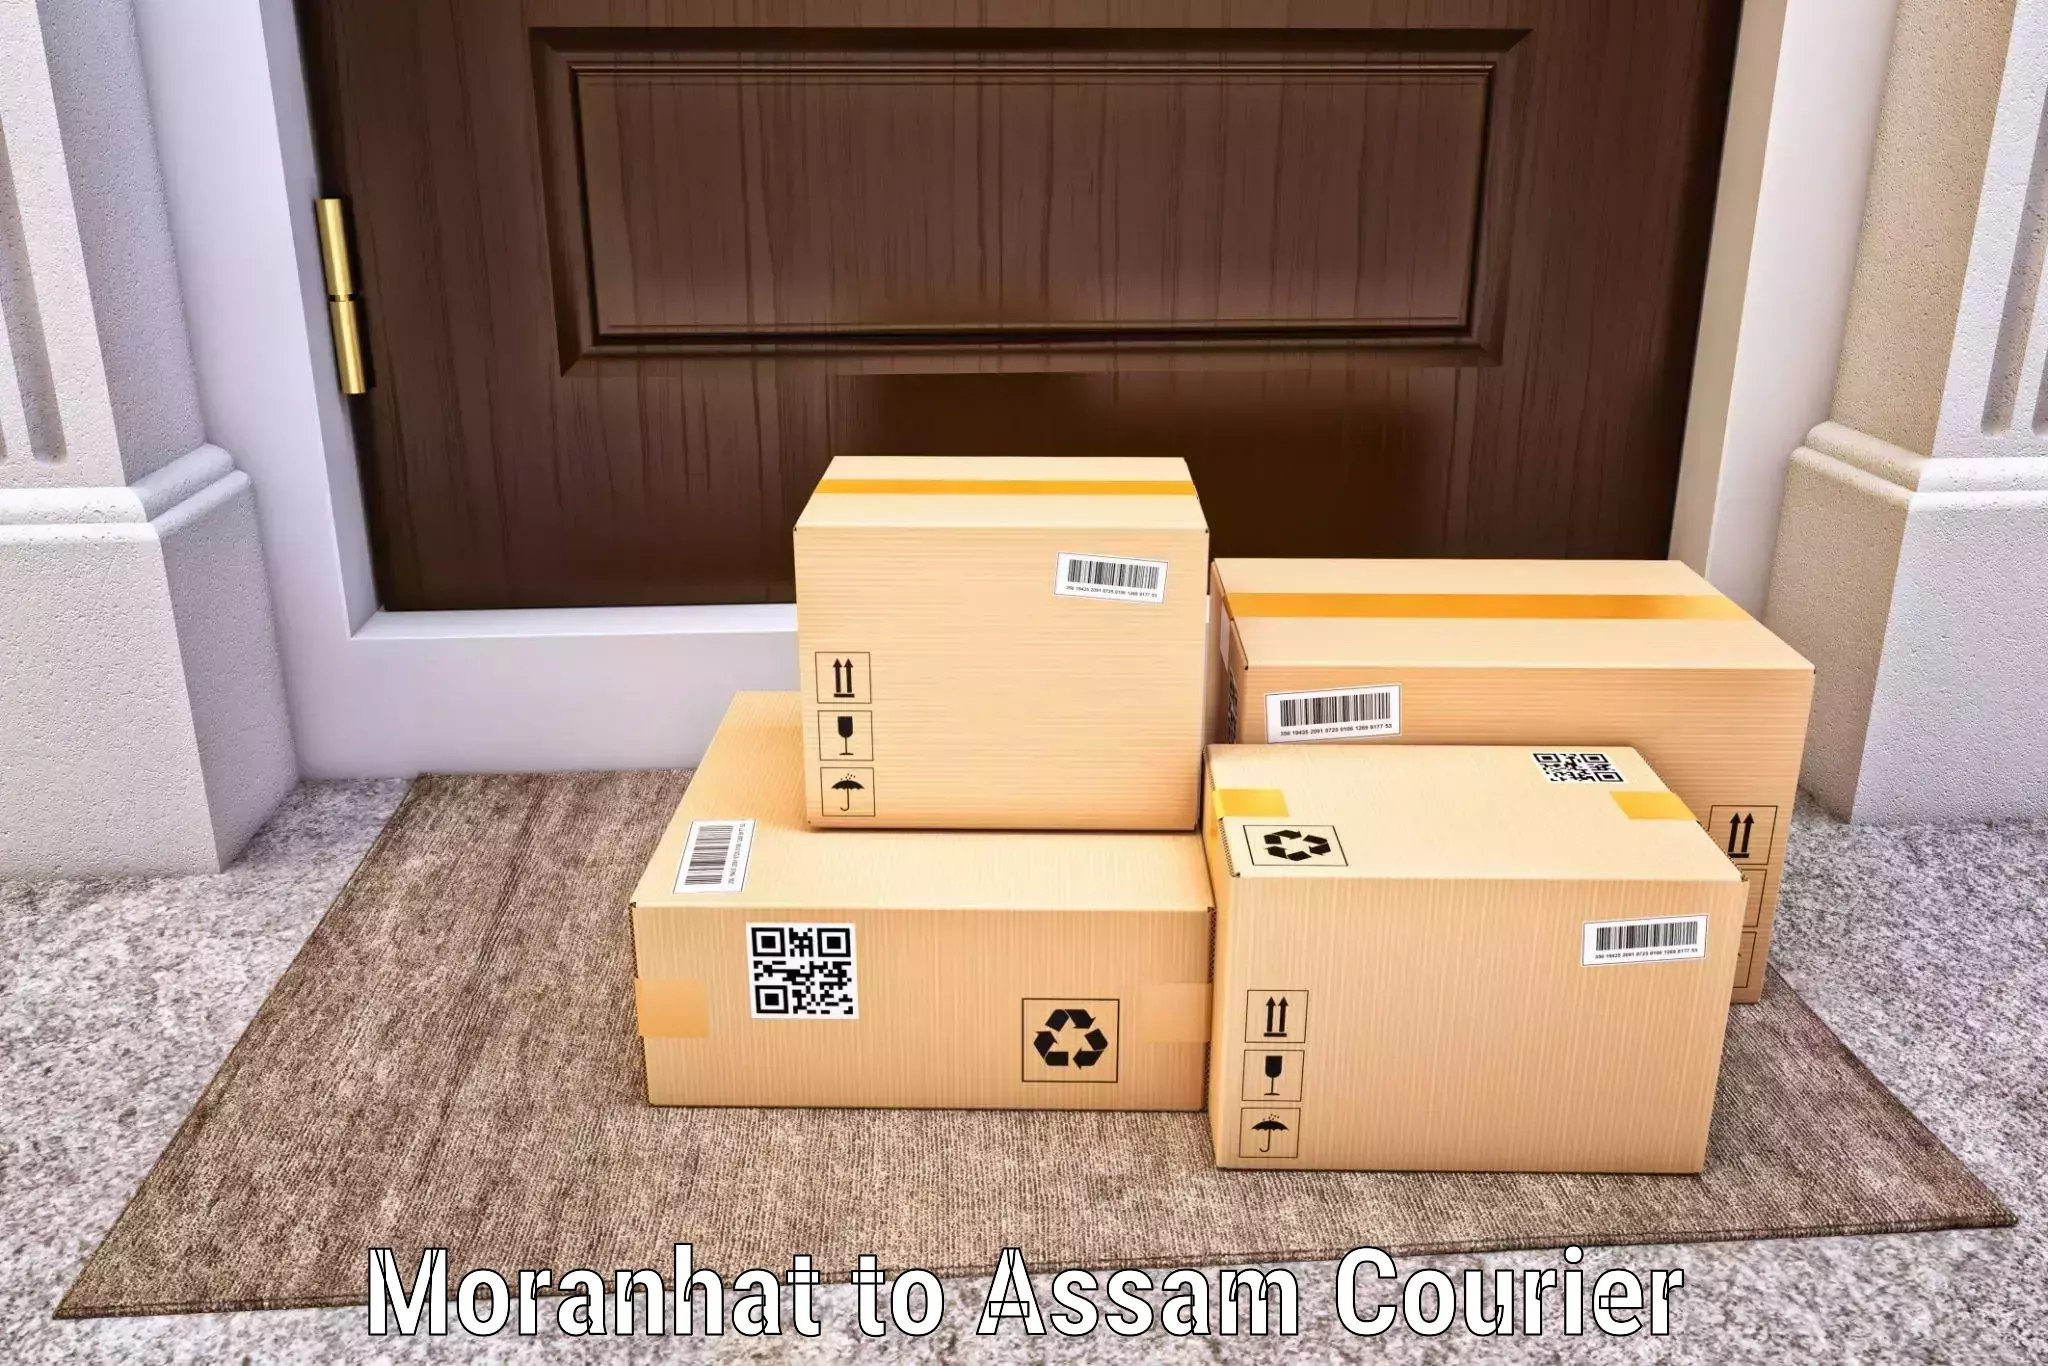 Multi-service courier options Moranhat to Tinsukia